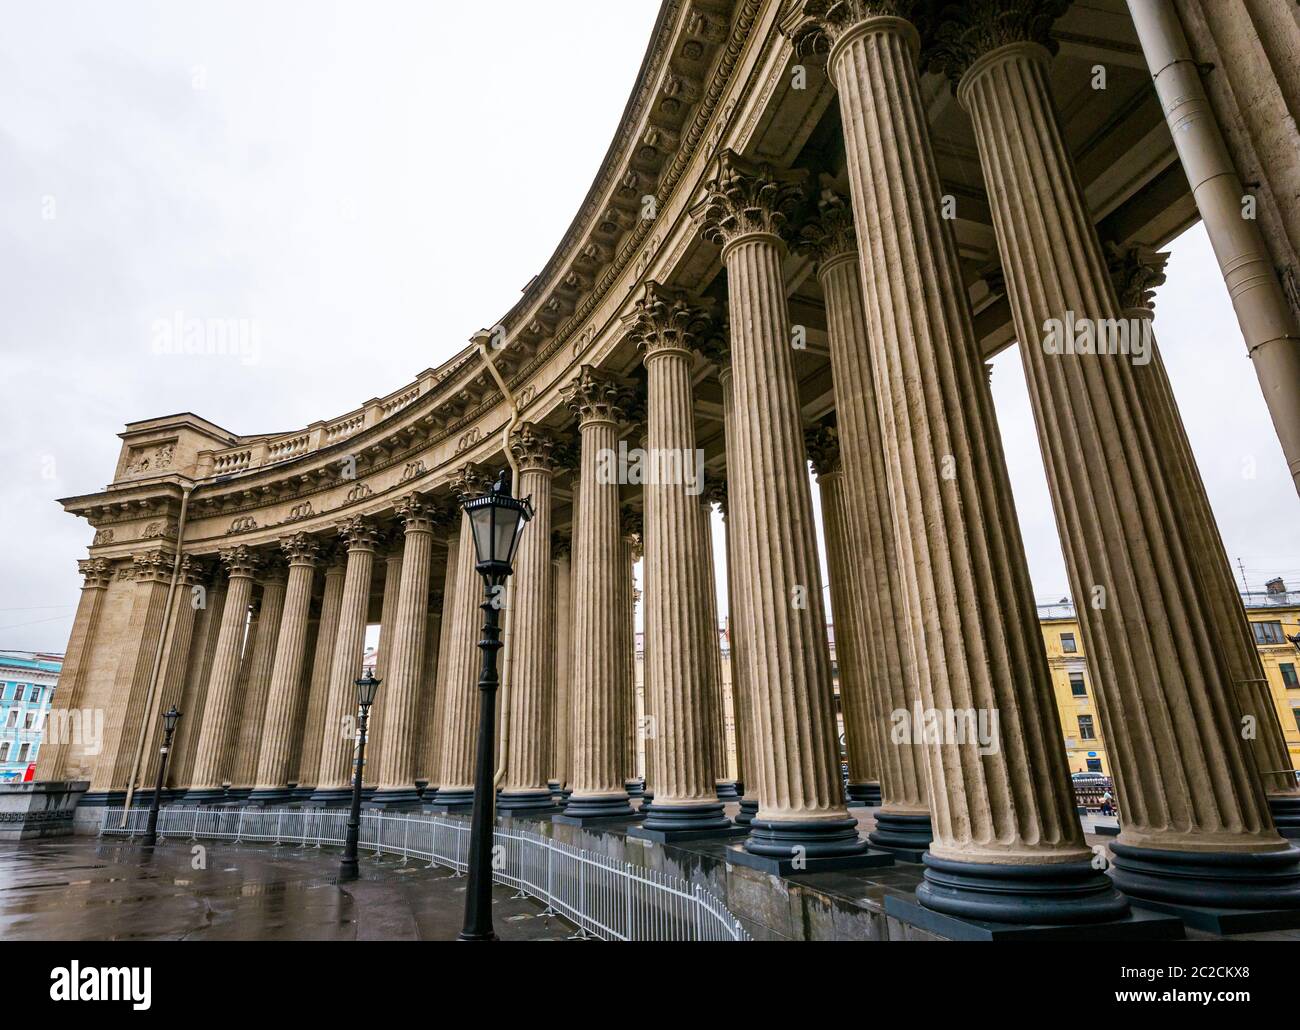 Colonnes de colonnade courbées de la cathédrale de Kazan, Saint-Pétersbourg, Russie Banque D'Images